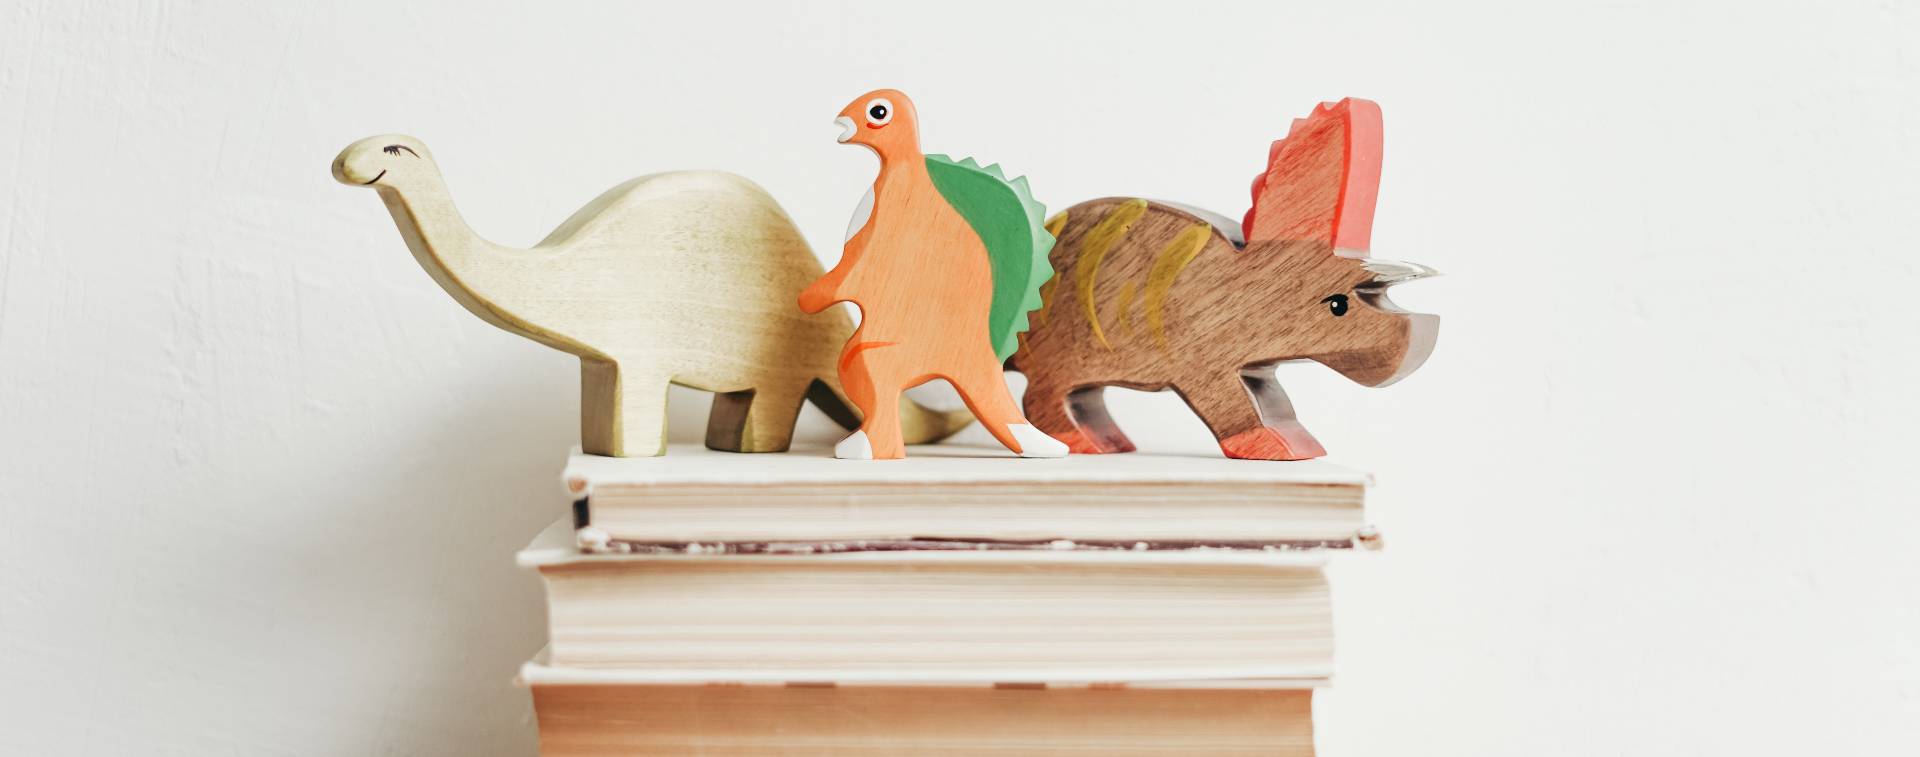 Foto de unos libros con unos dinosaurios de decoración encima